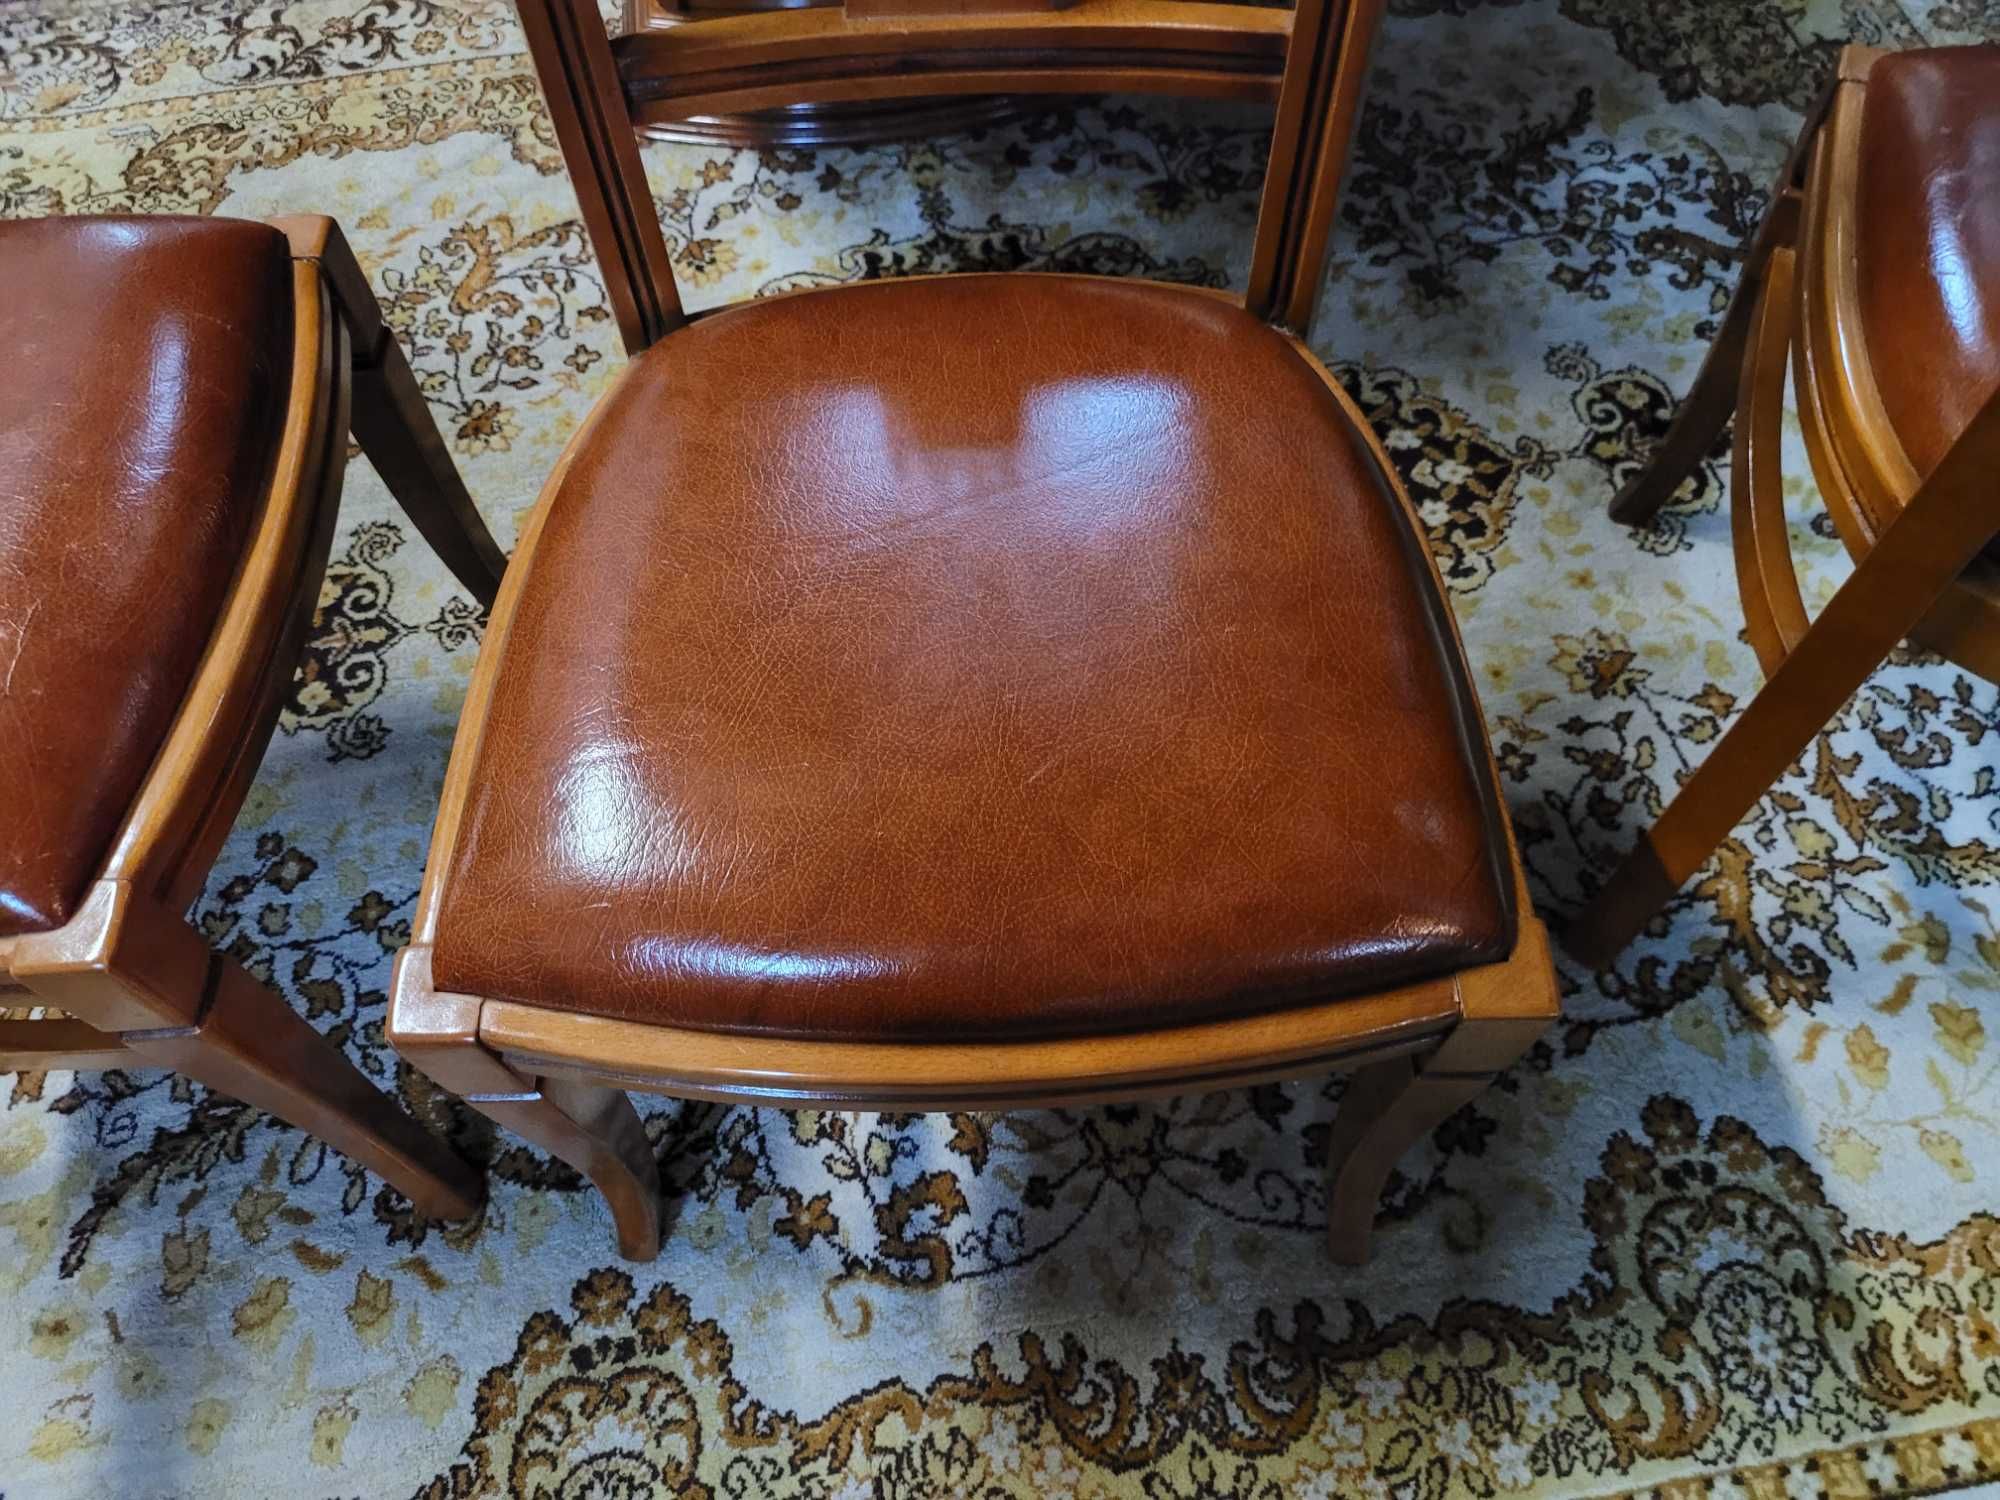 Cadeiras em madeira maciça - óptimo estado - Valor unitário